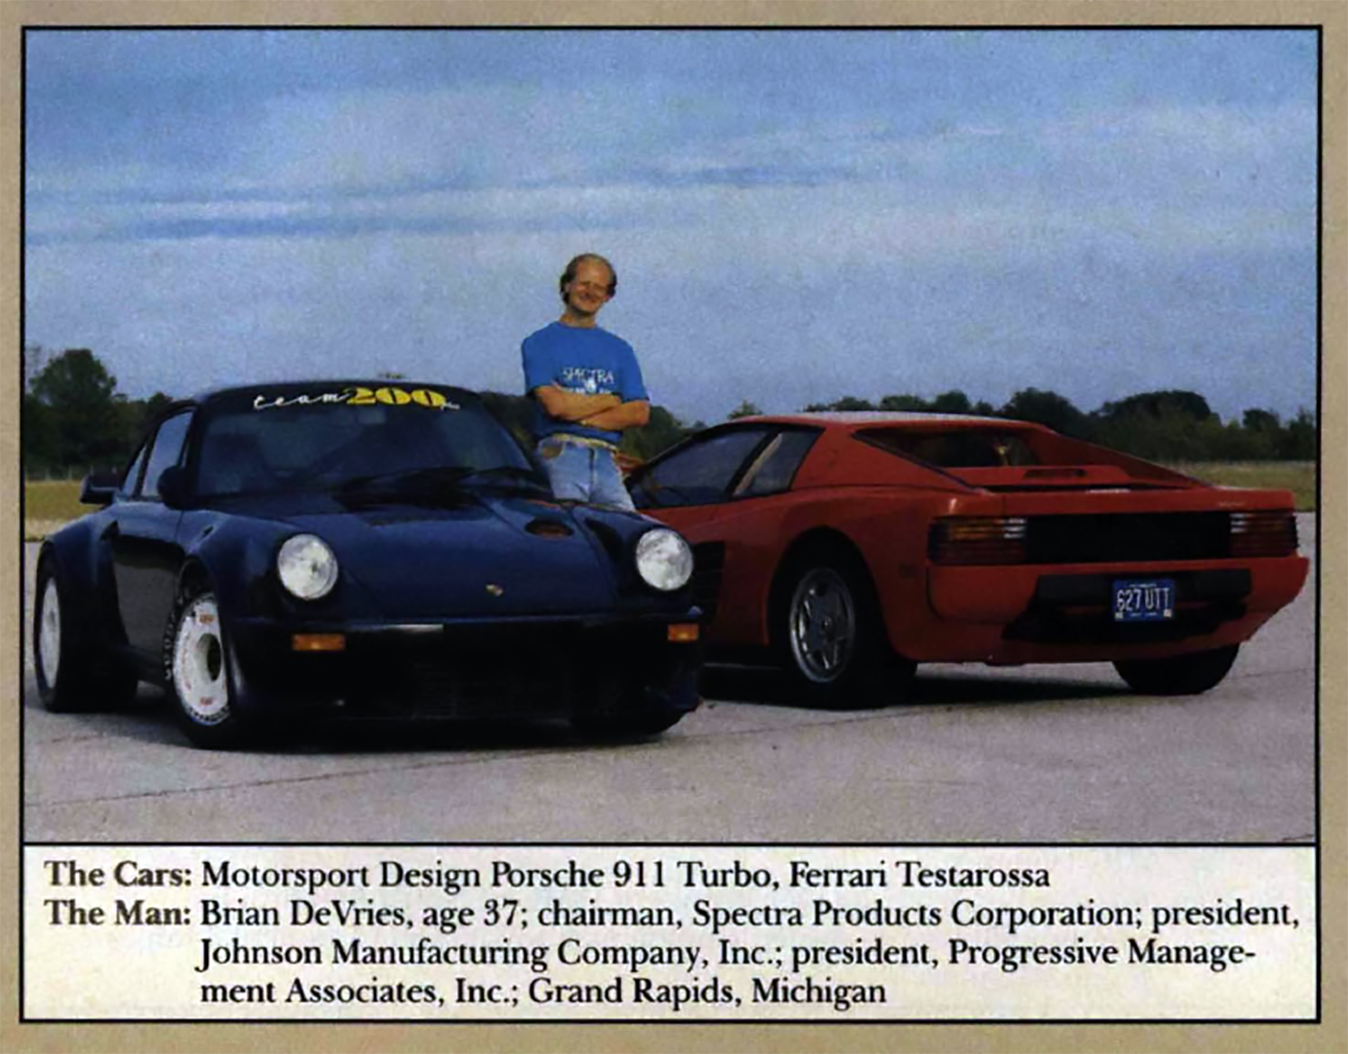 売り切れ必至 1987 1 25 Mpc ダッジ モナコ フィギュア付属 好評販売中 ジョーカー ジョーカー ゲッタウェイカー その他おもちゃ Viktorsports Com